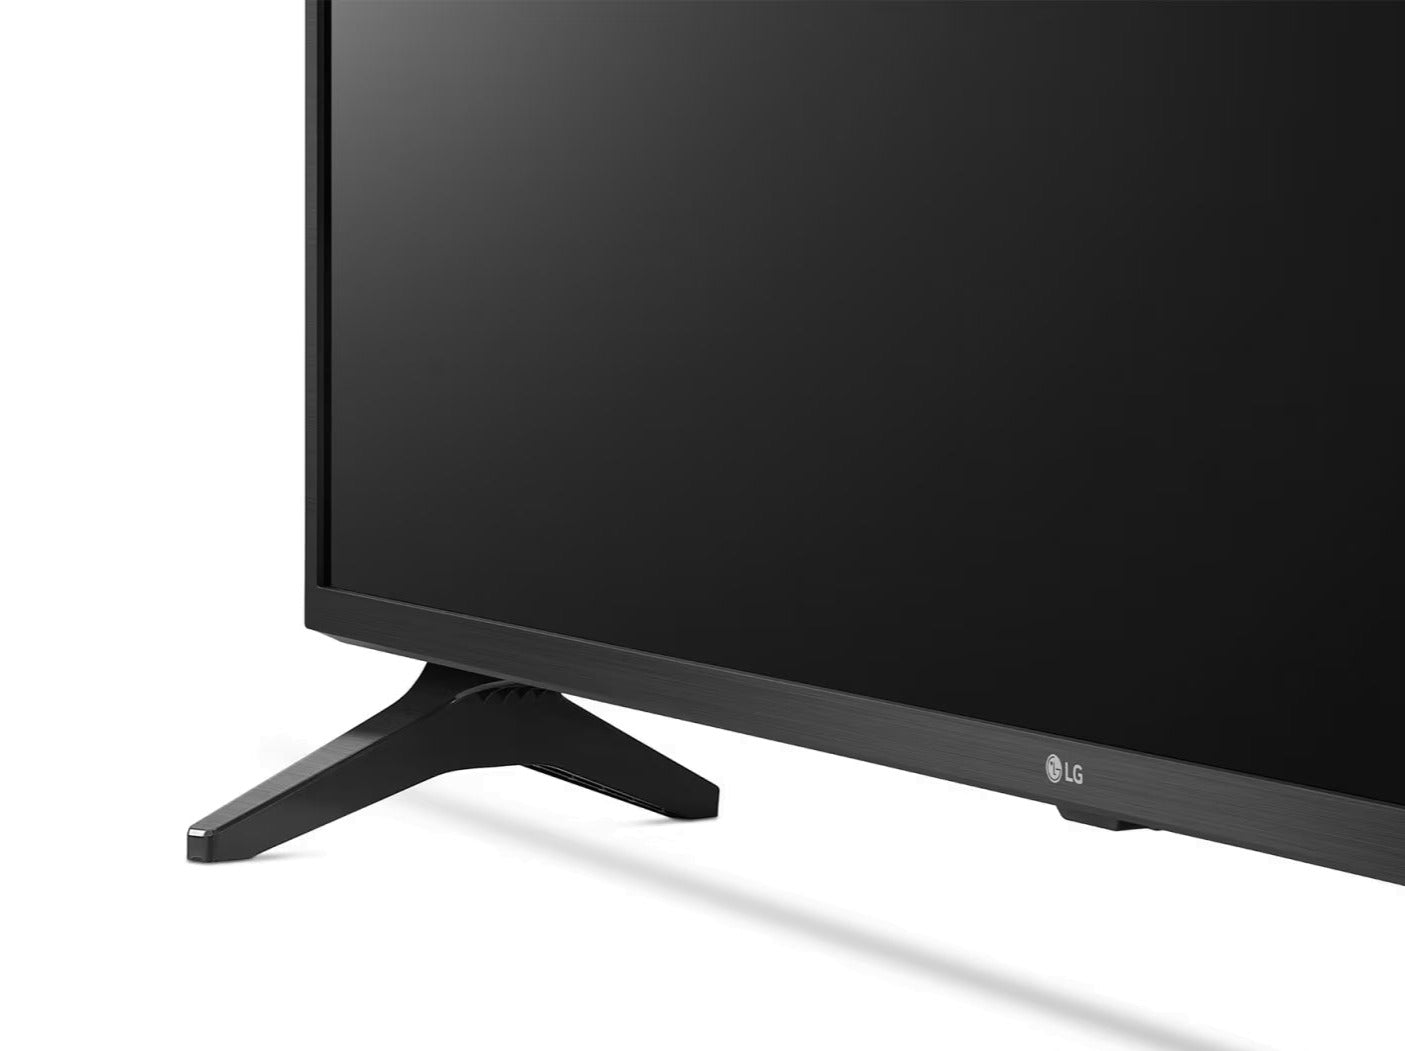 LG 55UP7500 Smart TV előlnézetben enyhén balra fordítva, talpra ráközelítve.